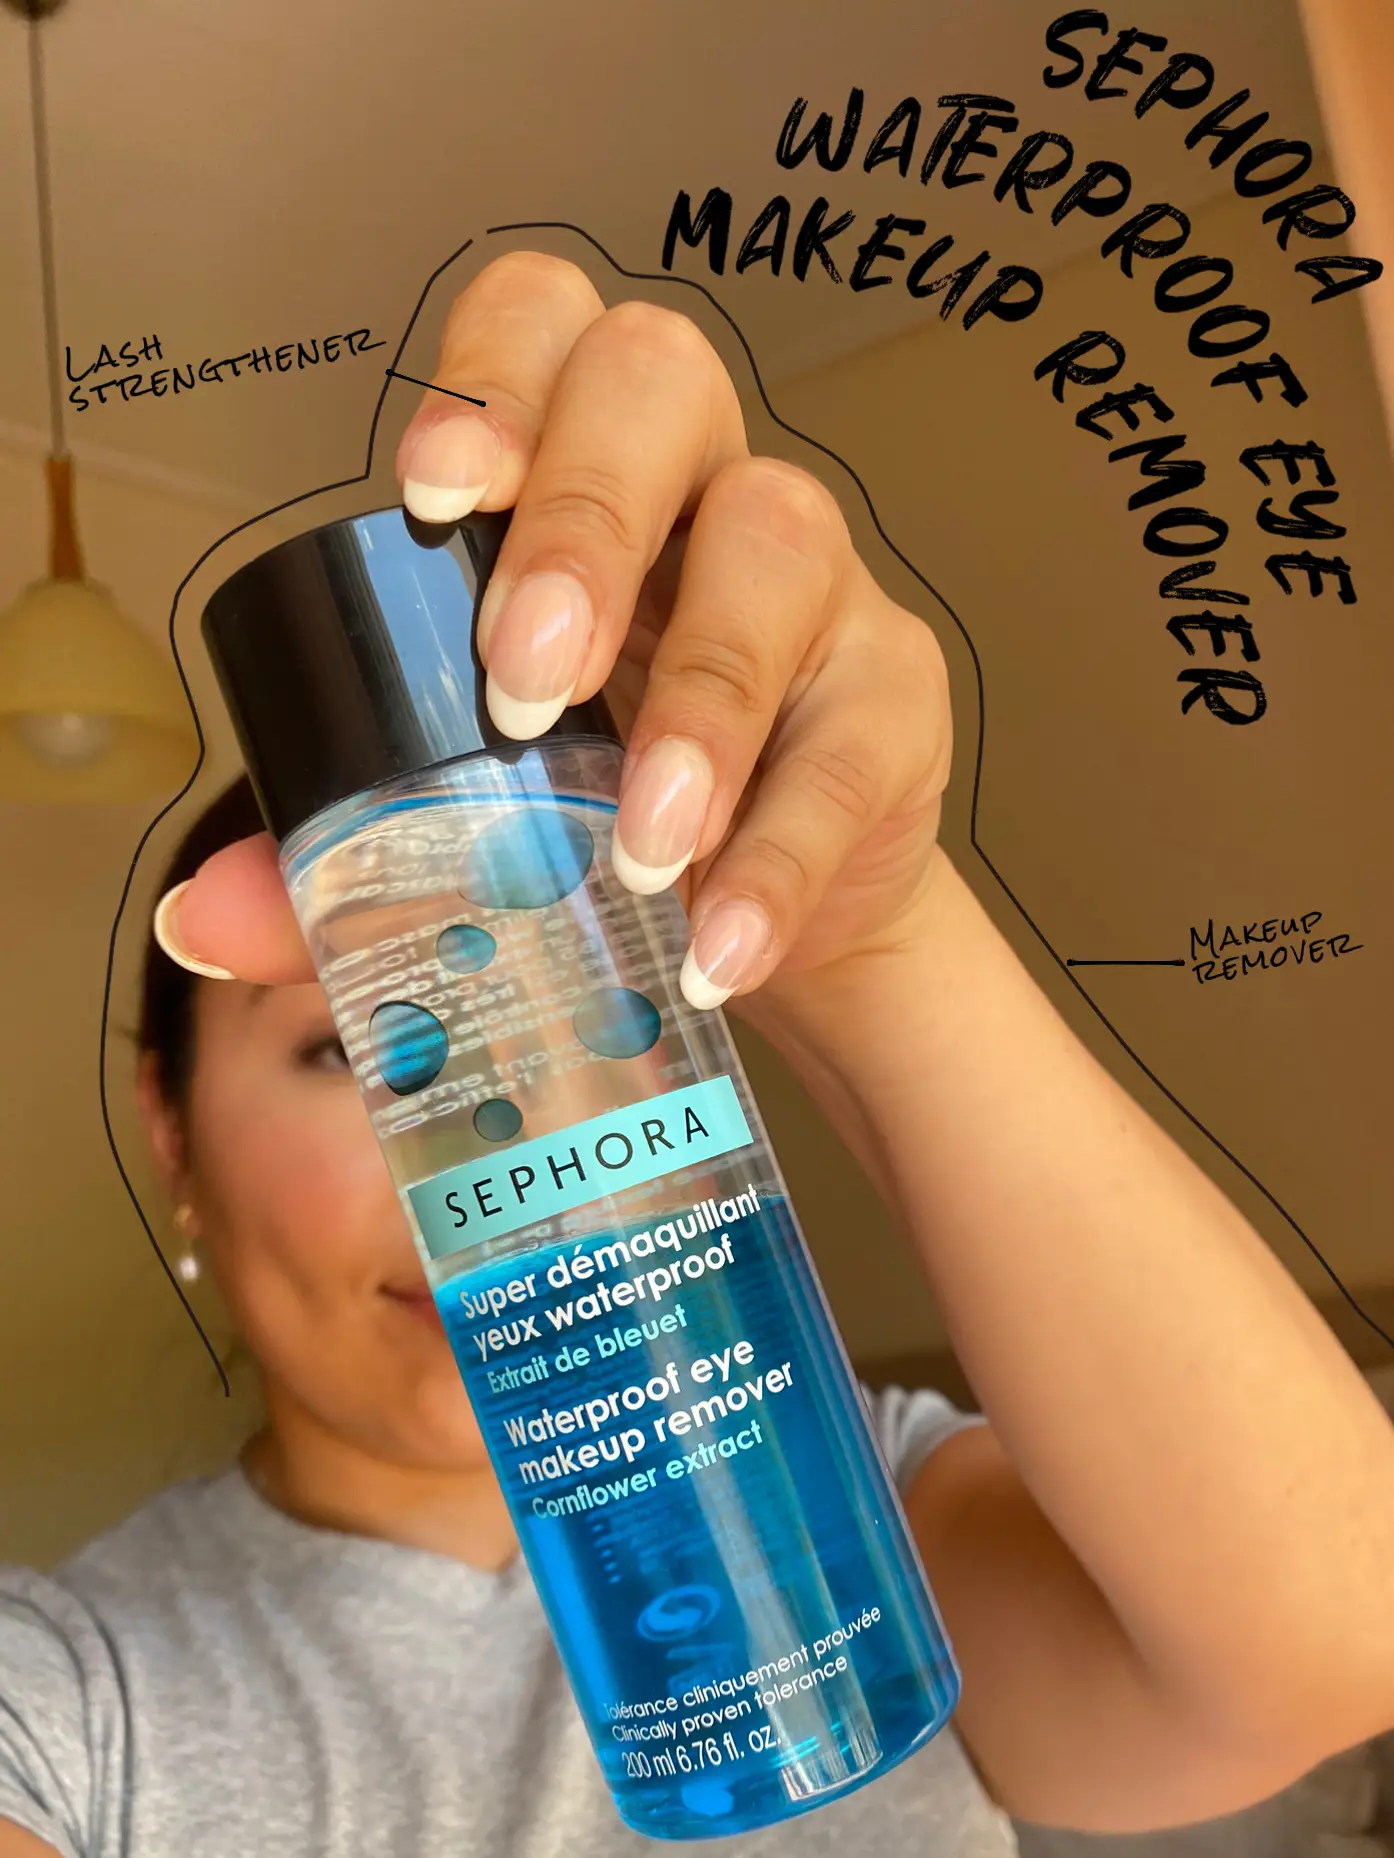 Super démaquillant yeux waterproof - Extrait de bleuet de SEPHORA